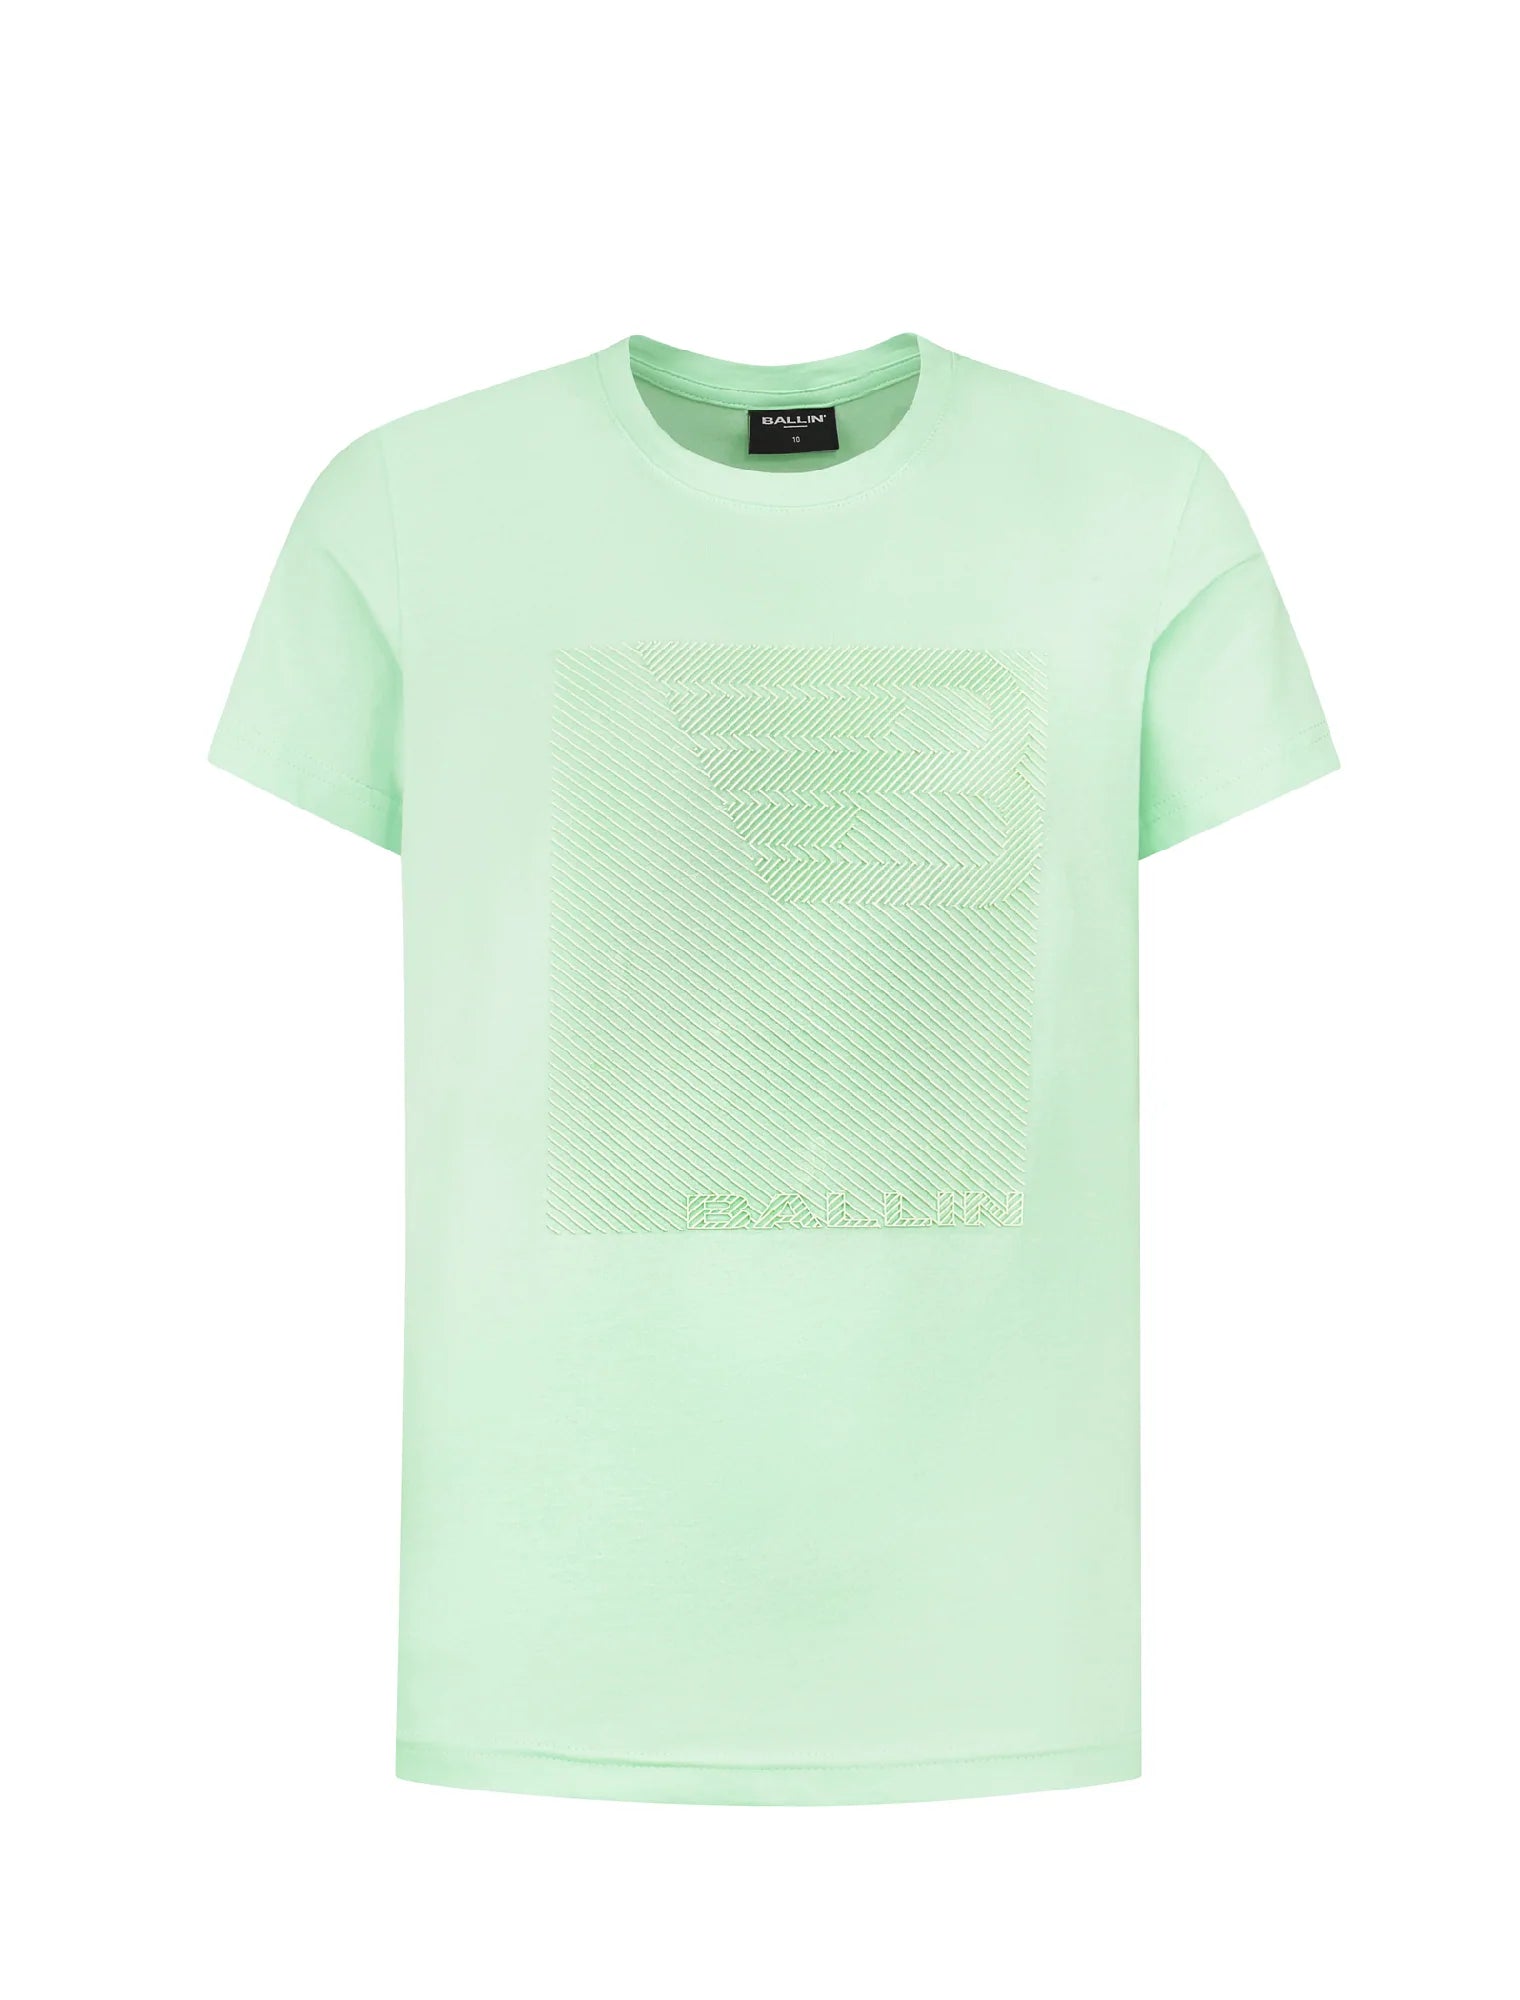 Unisexs T-shirt van Ballin Amsterdam in de kleur Mint in maat 176.